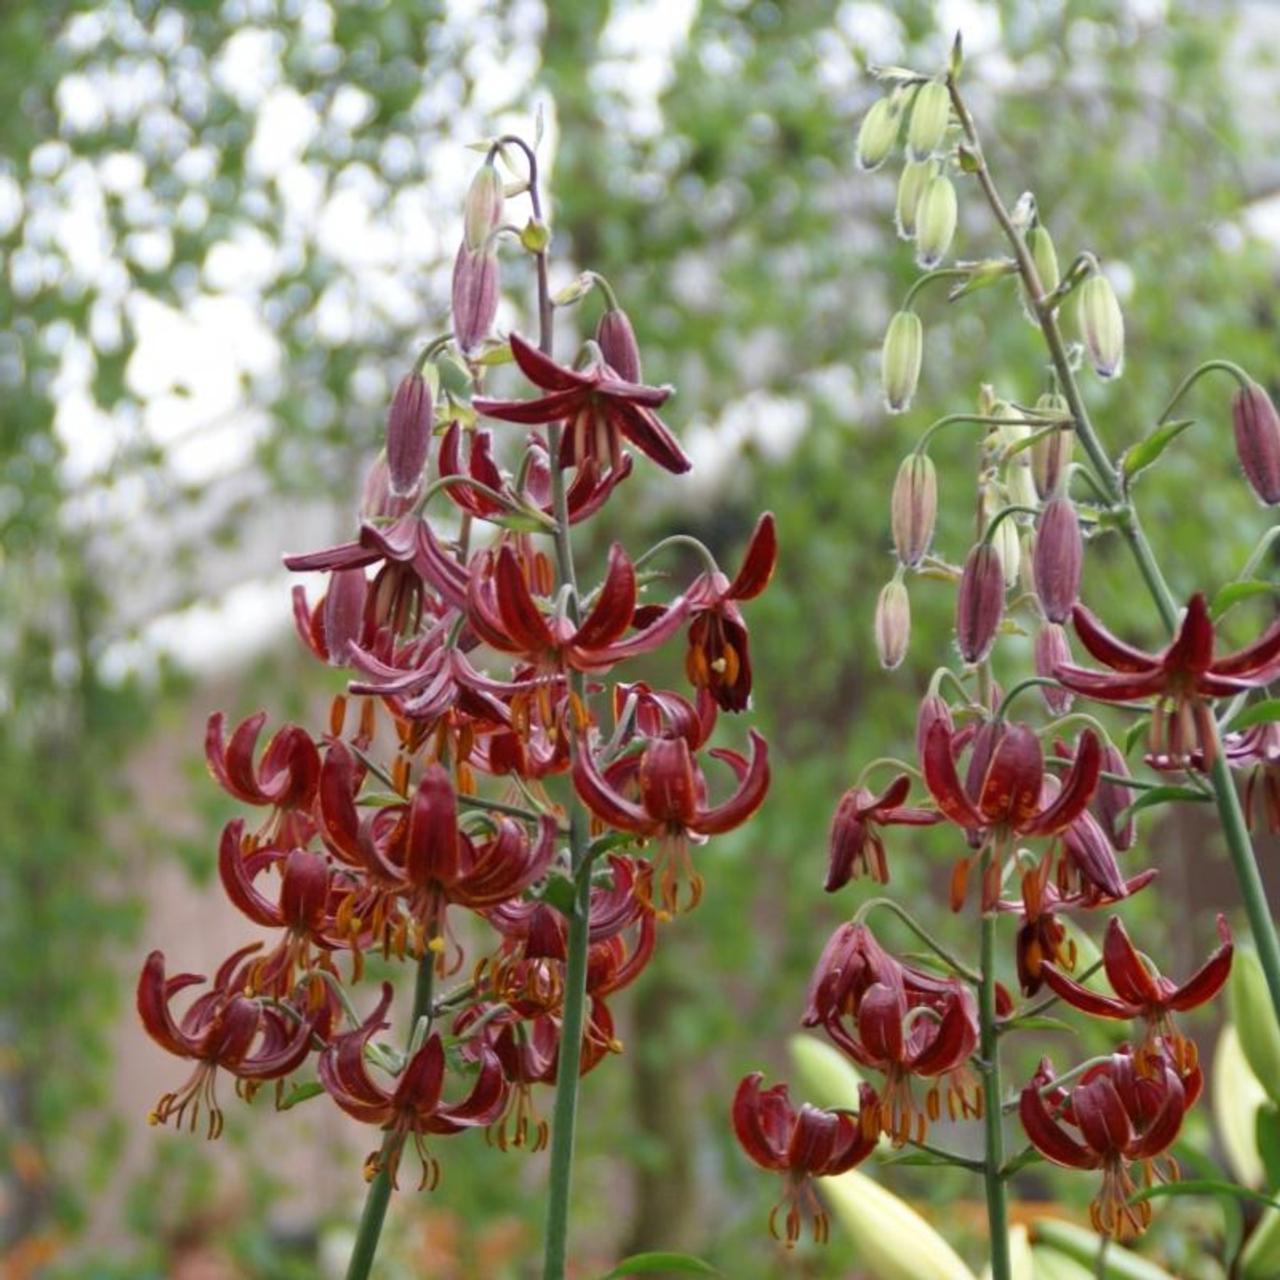 Lilium martagon 'Claude Shride' plant